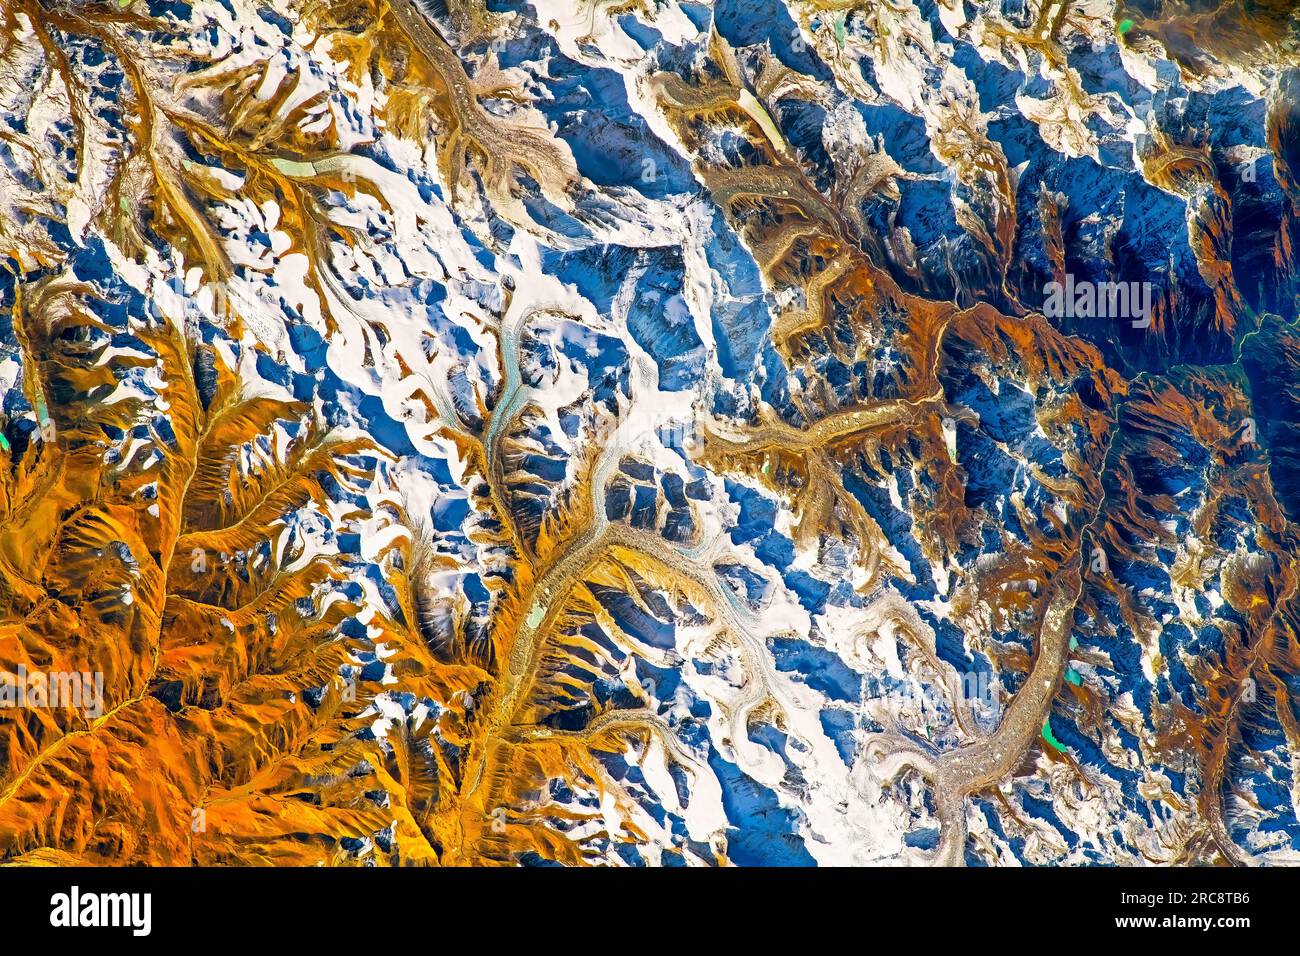 Monte Everest, montagna innevata nell'Himalaya, confine tra Nepal e India. Immagine della NASA. Linee guida per l'uso dei supporti: https://www.nasa.gov/multimedia Foto Stock